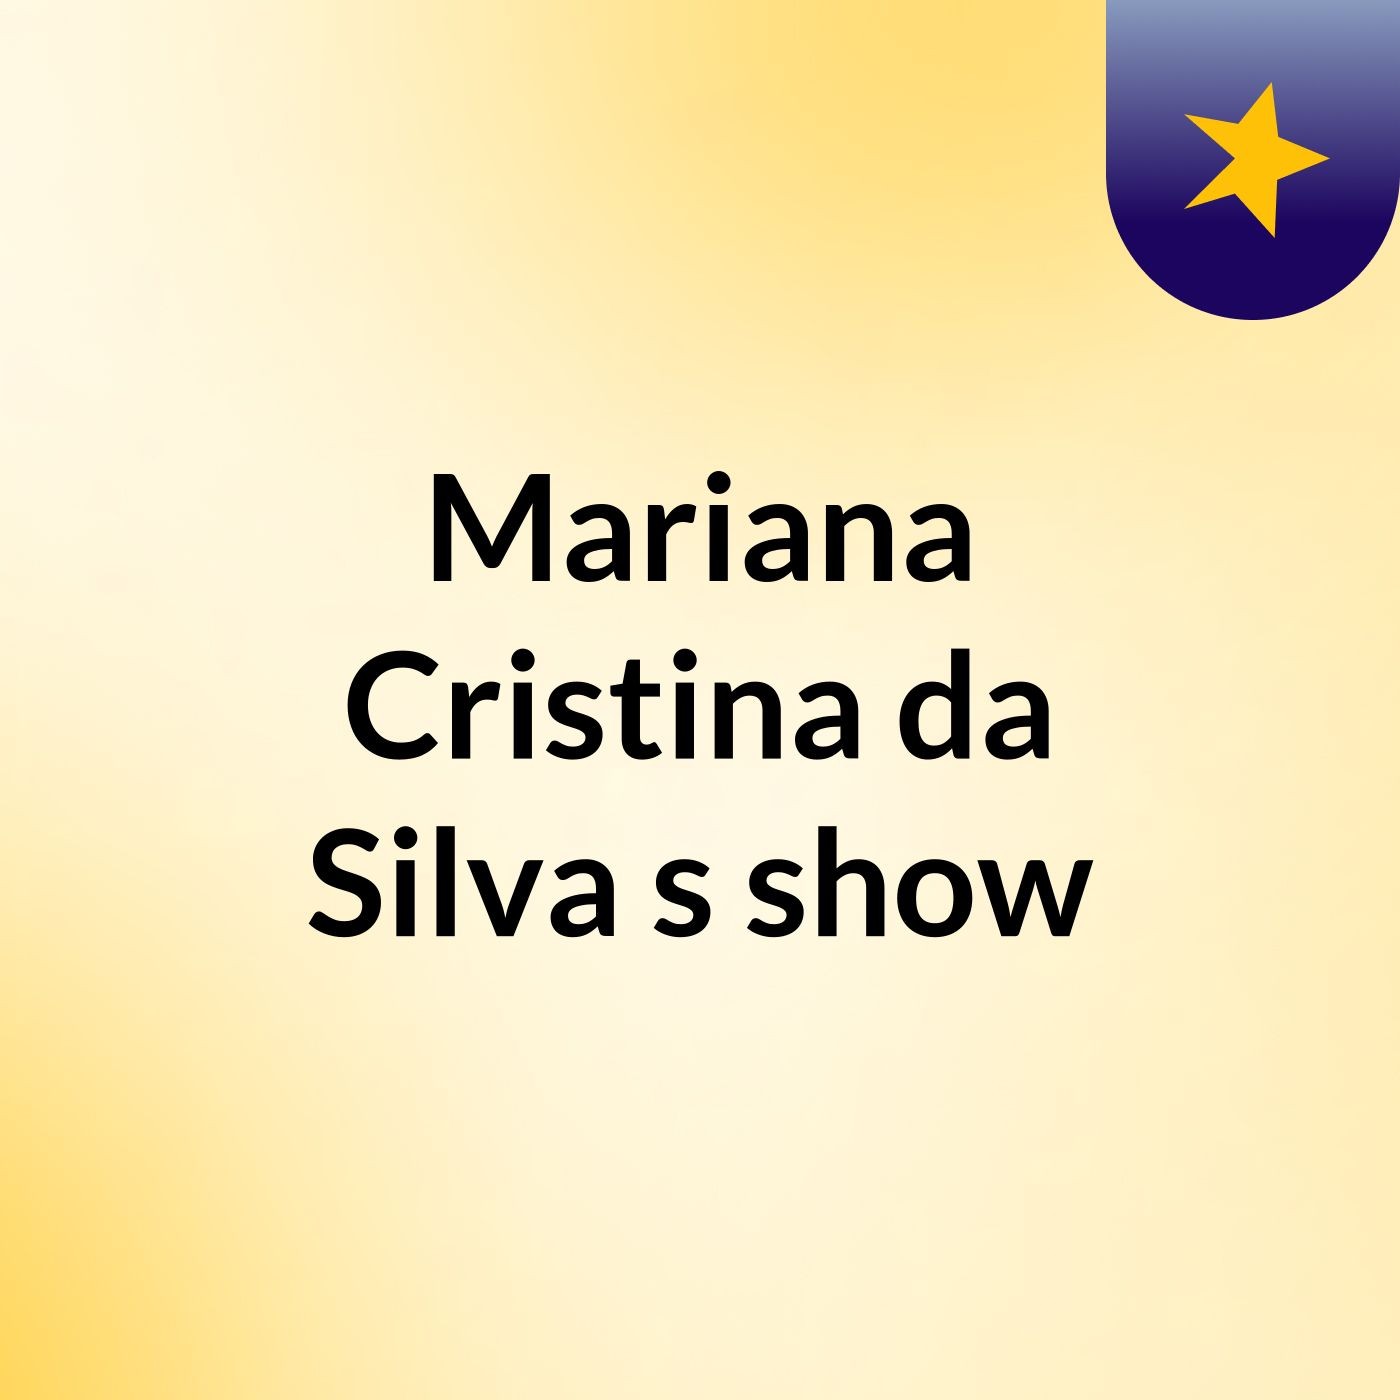 Mariana Cristina da Silva's show